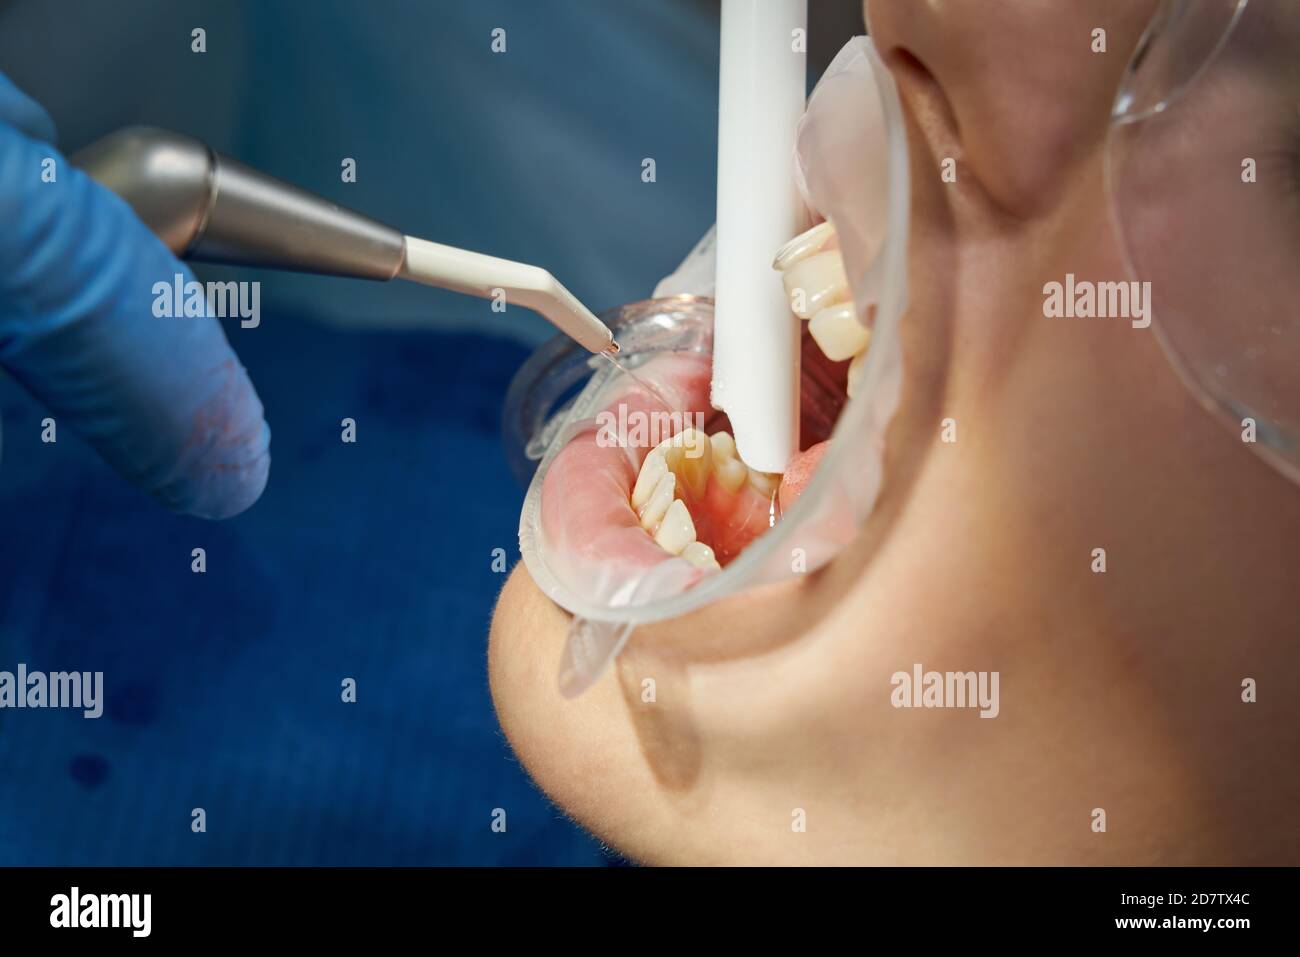 Zahnarzt mit Luft Wasser Spray während der Behandlung des Patienten  Stockfotografie - Alamy